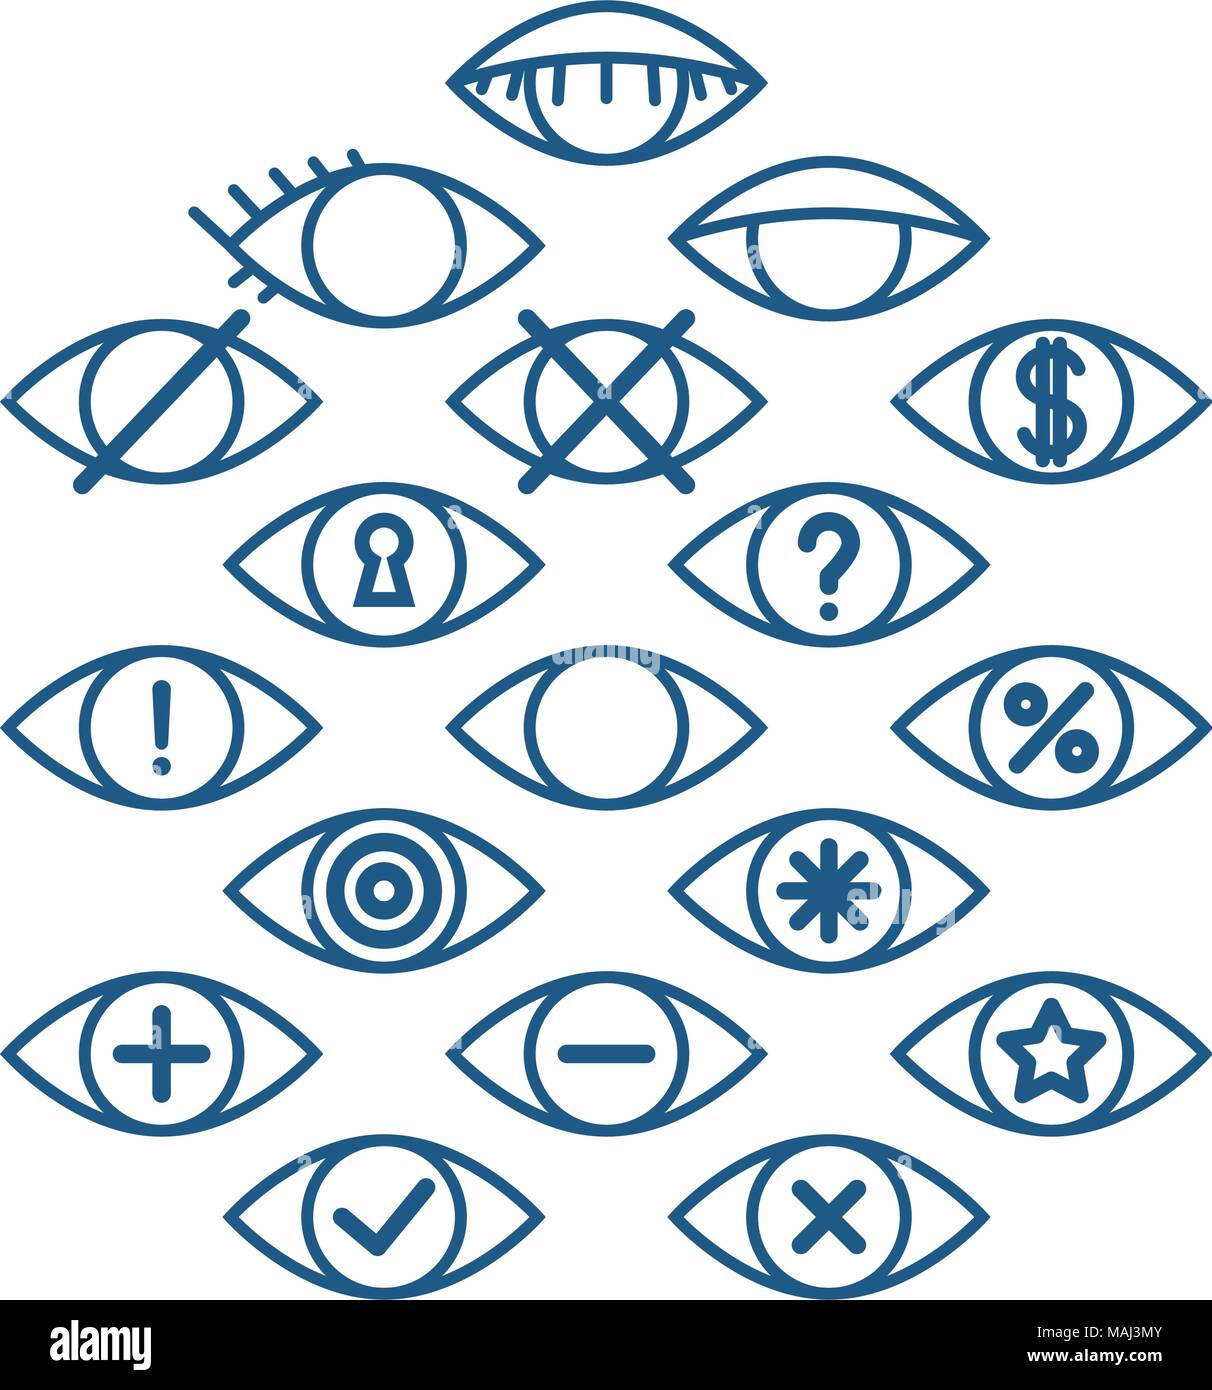 Auge Icons für verschiedene Aktionen, set Umrisse Auge Piktogramme Vektorbetrieb Symbole Stock Vektor